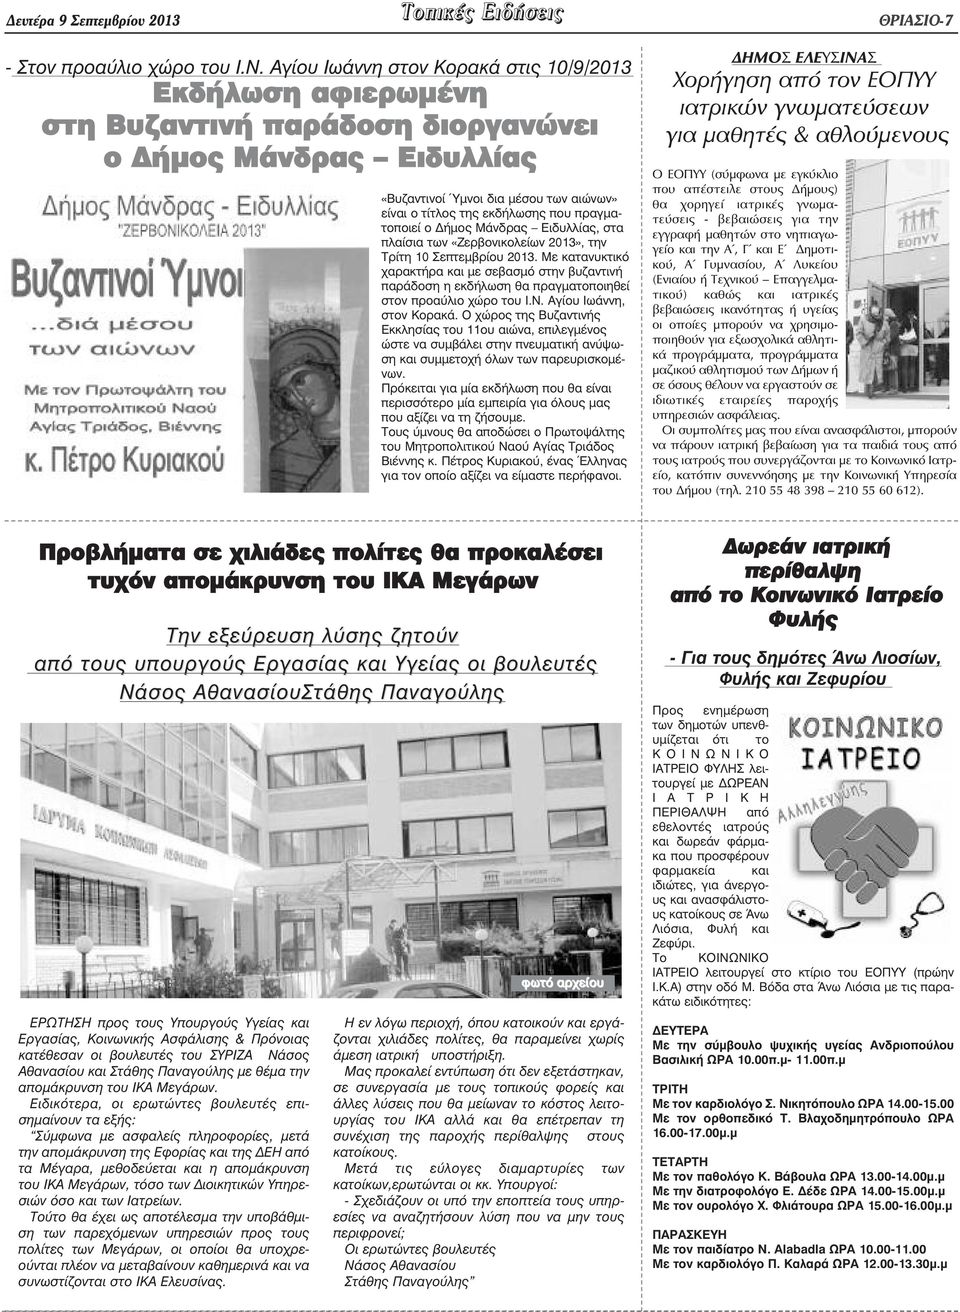 πραγµατοποιεί ο ήµος Μάνδρας Ειδυλλίας, στα πλαίσια των «Ζερβονικολείων 2013», την Τρίτη 10 Σεπτεµβρίου 2013.